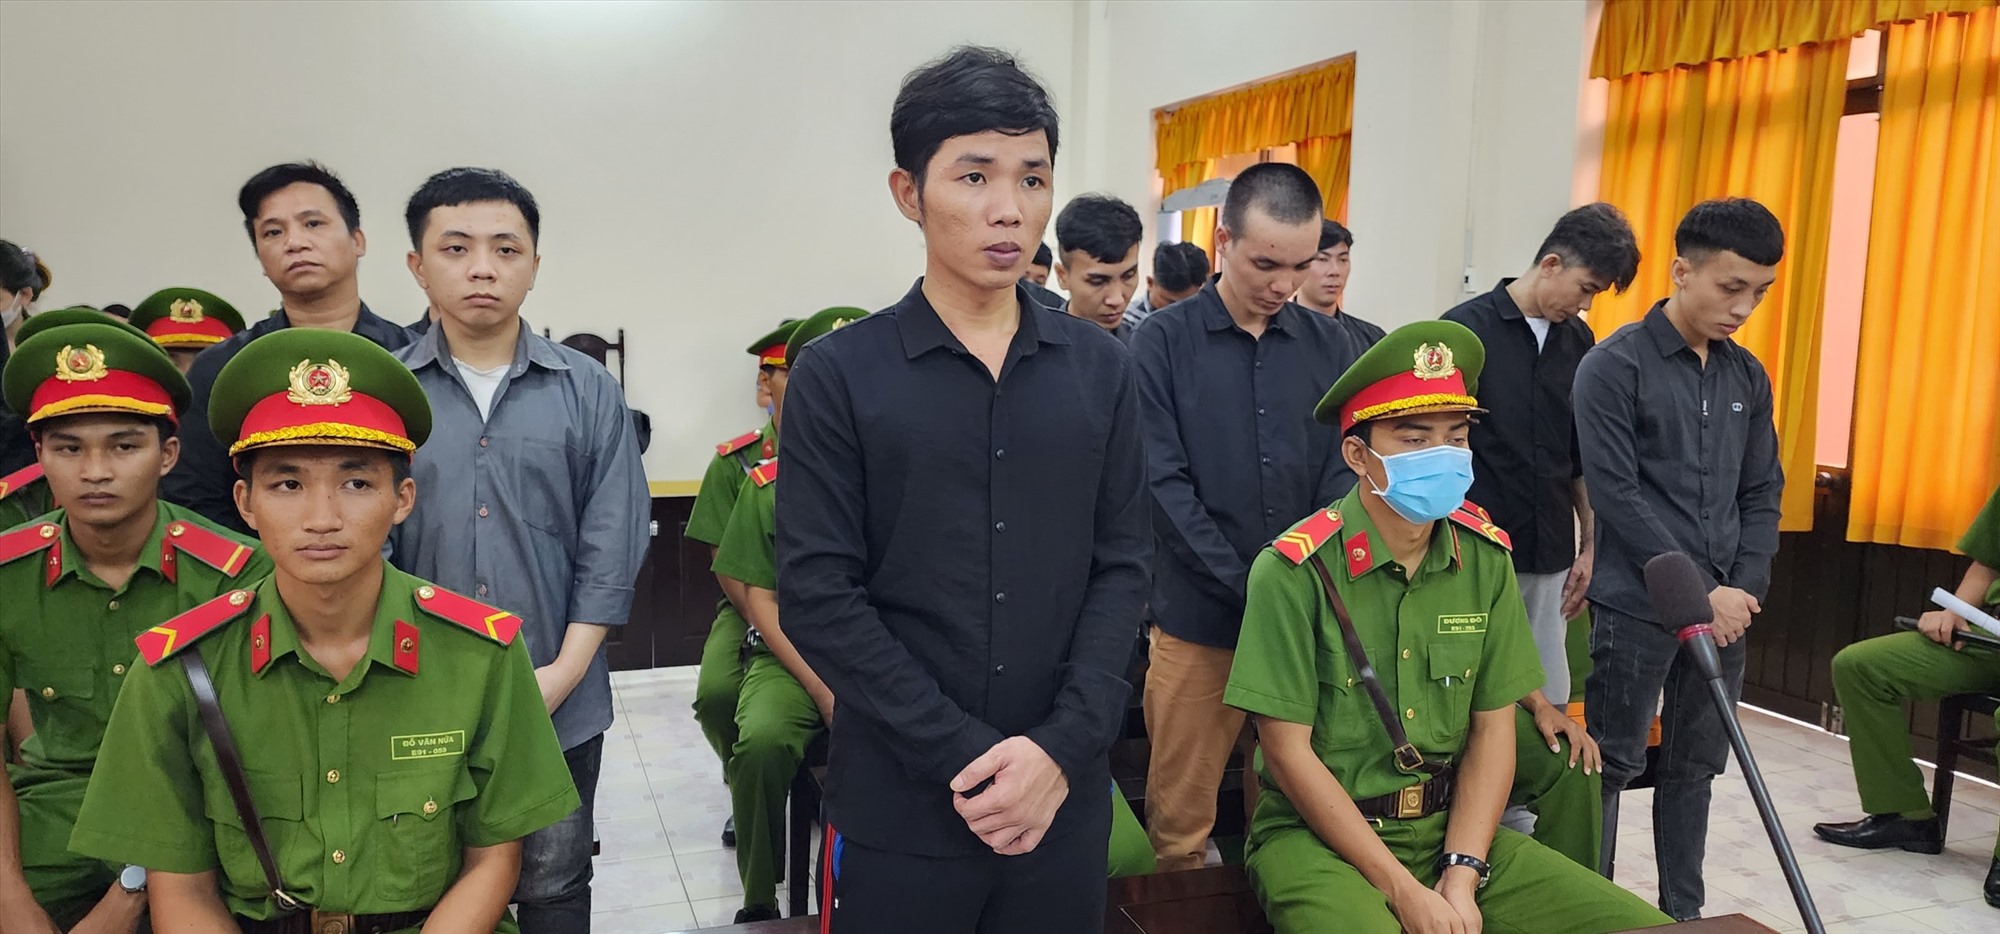 Bị cáo Dương Minh Tuấn (hàng đầu - ở giữa) lĩnh tổng hình phạt là 10 năm 6 tháng tù. Ảnh: Công an cung cấp